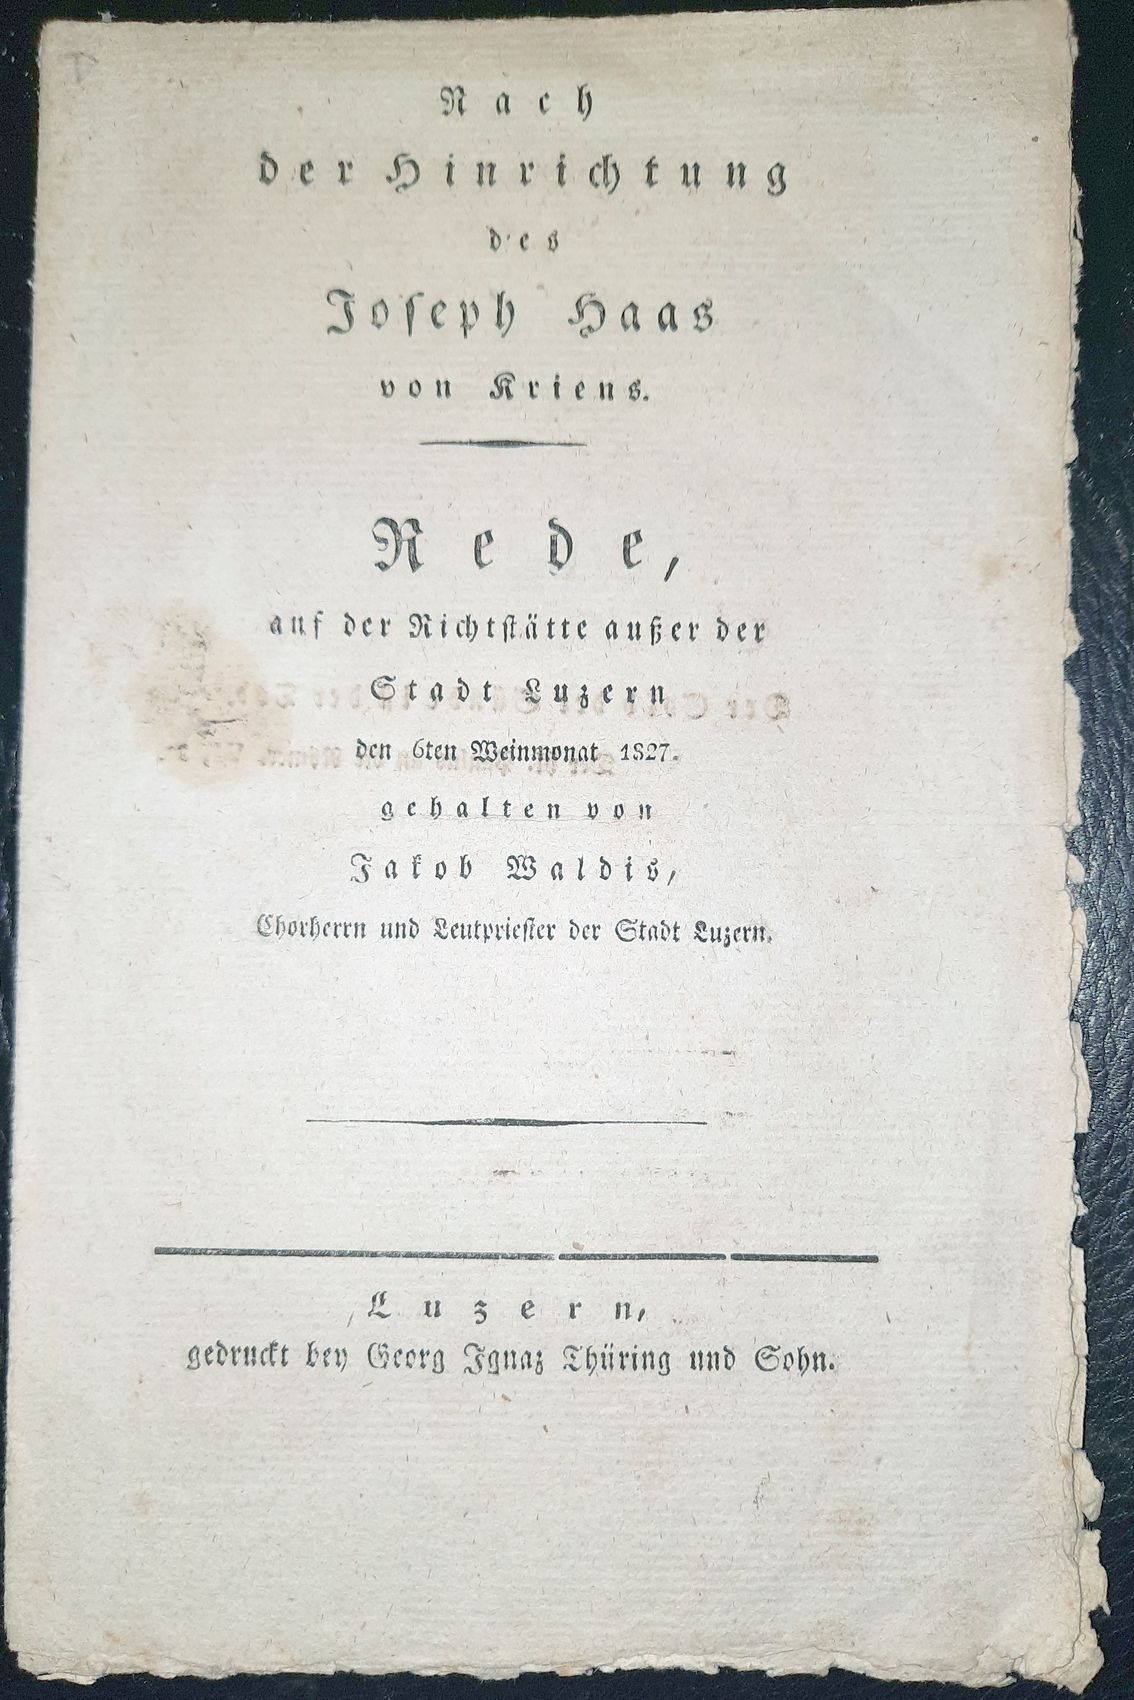 WALDIS, (JOHANN) JAKOB: - Nach der Hinrichtung des Joseph Haas von Kriens. Rede auf der Richtsttte ausser der Stadt Luzern, den 6ten Weinmonat 1827..